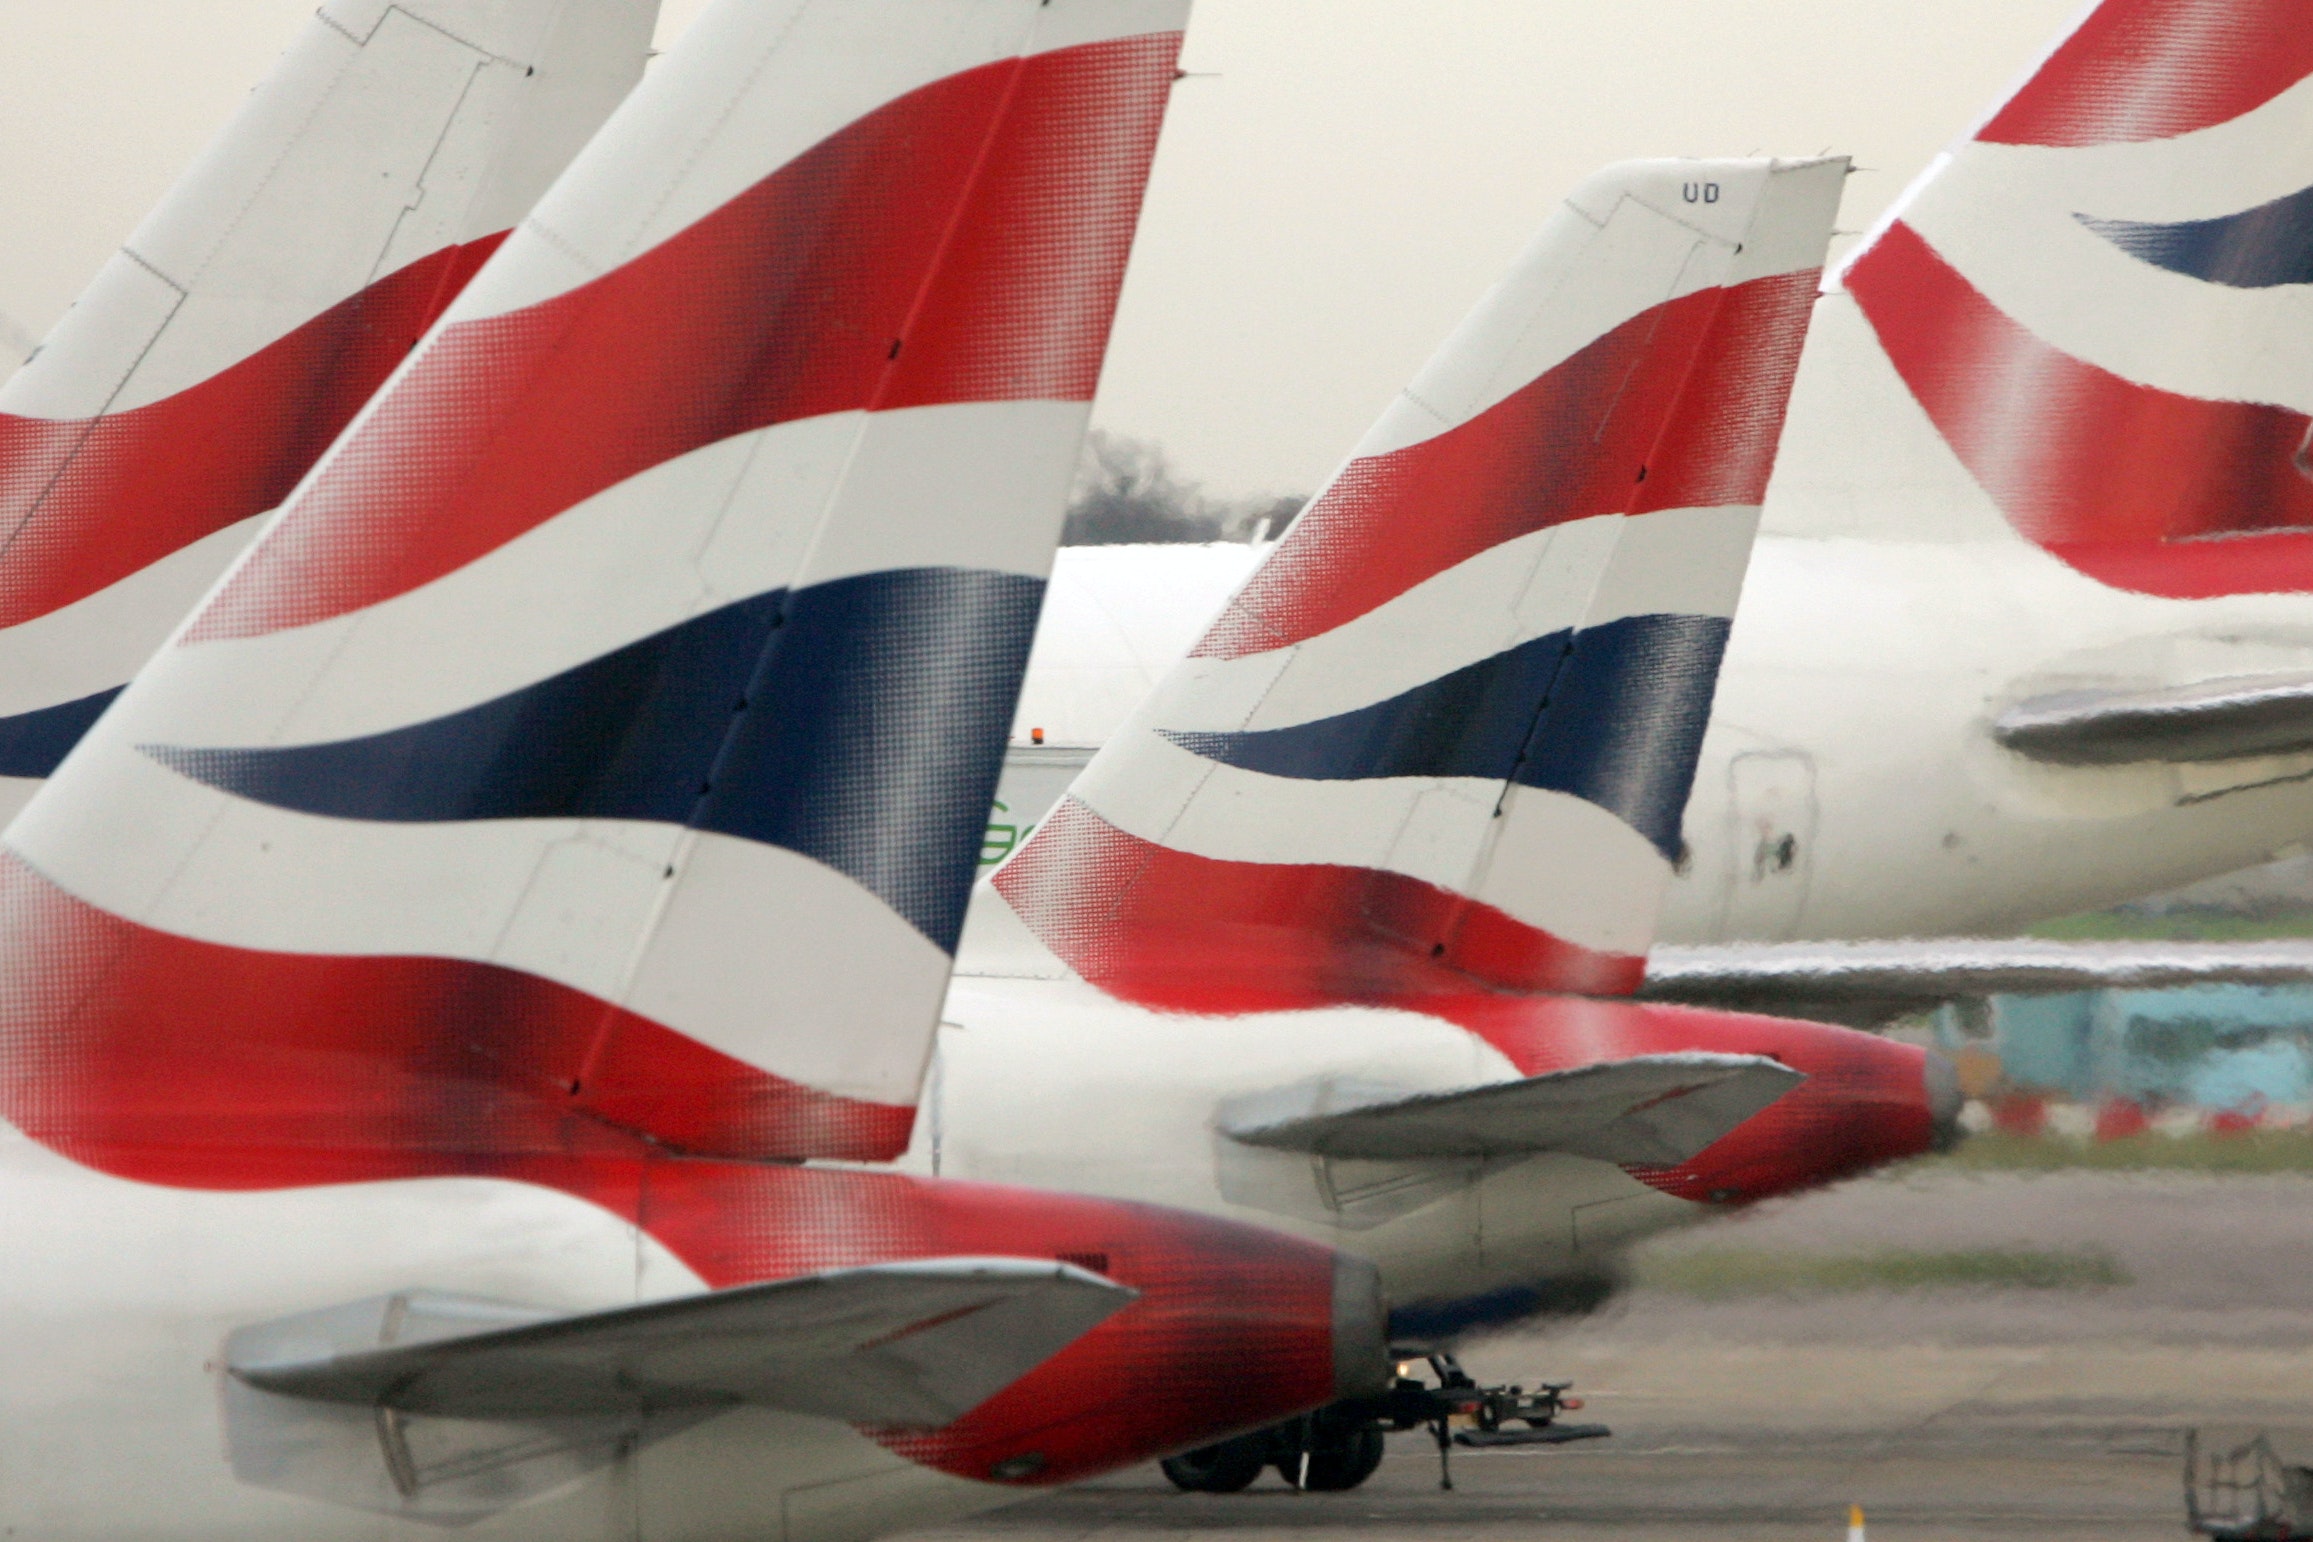 British Airways Owner IAG Decreases Flights After 1.3 Billion Slump